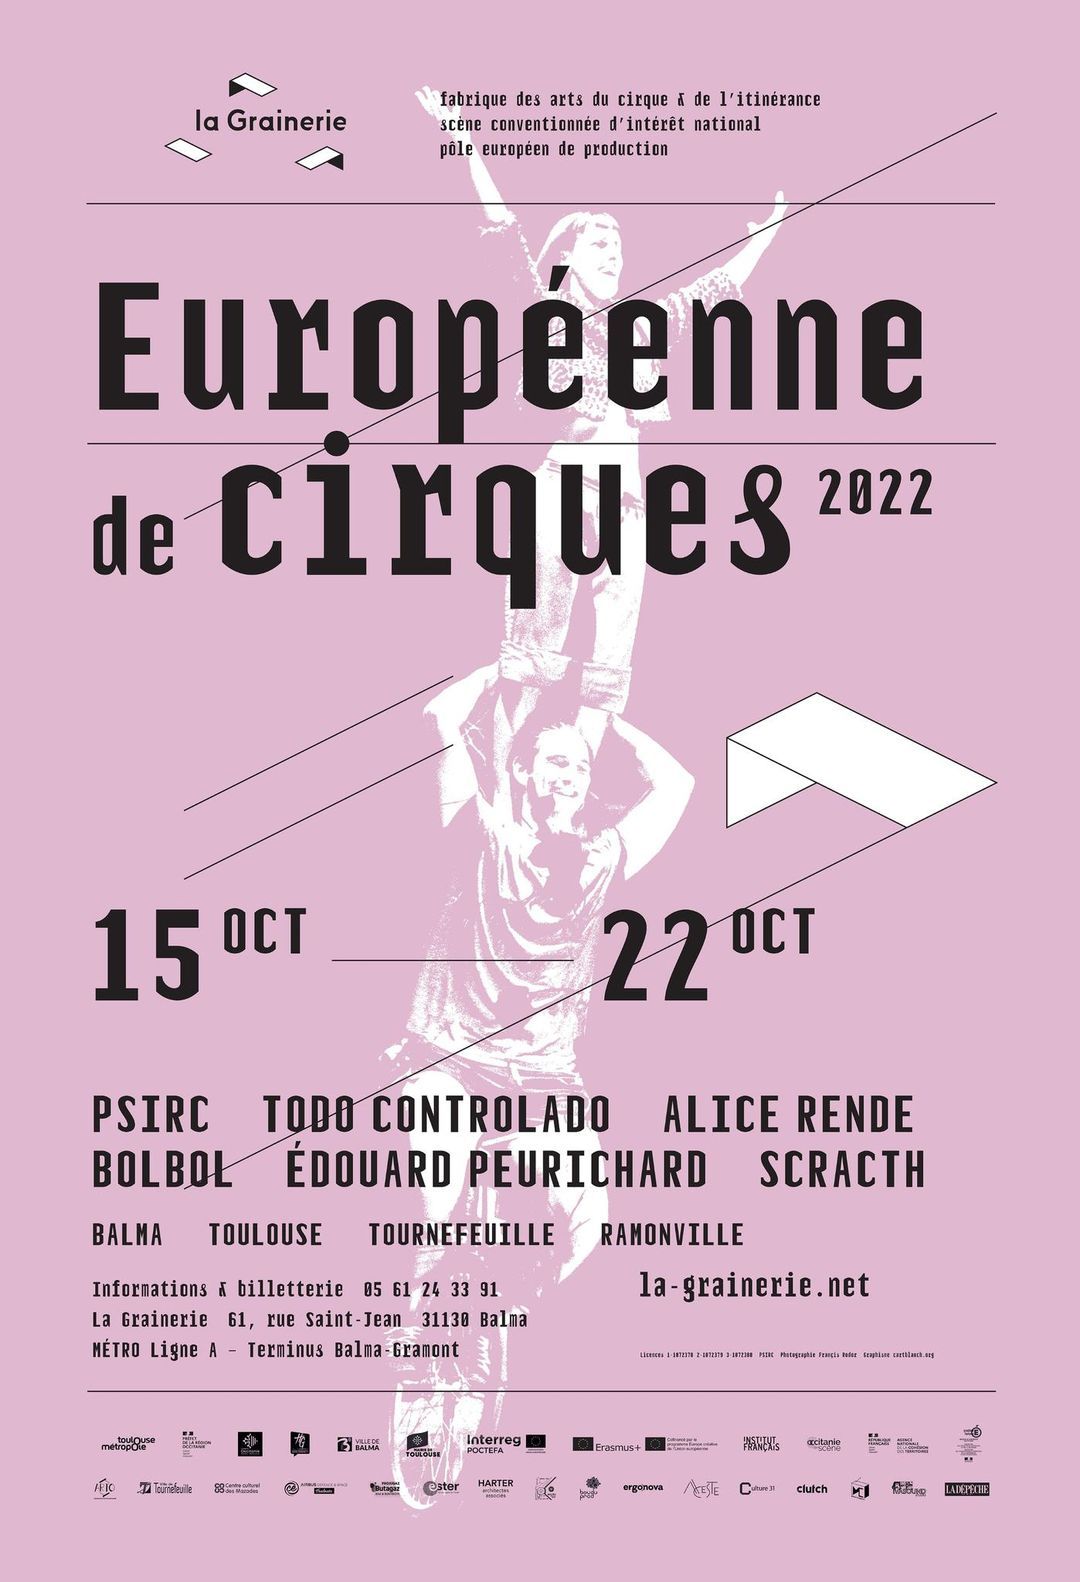 La Grainerie - Européenne de Cirques 2022